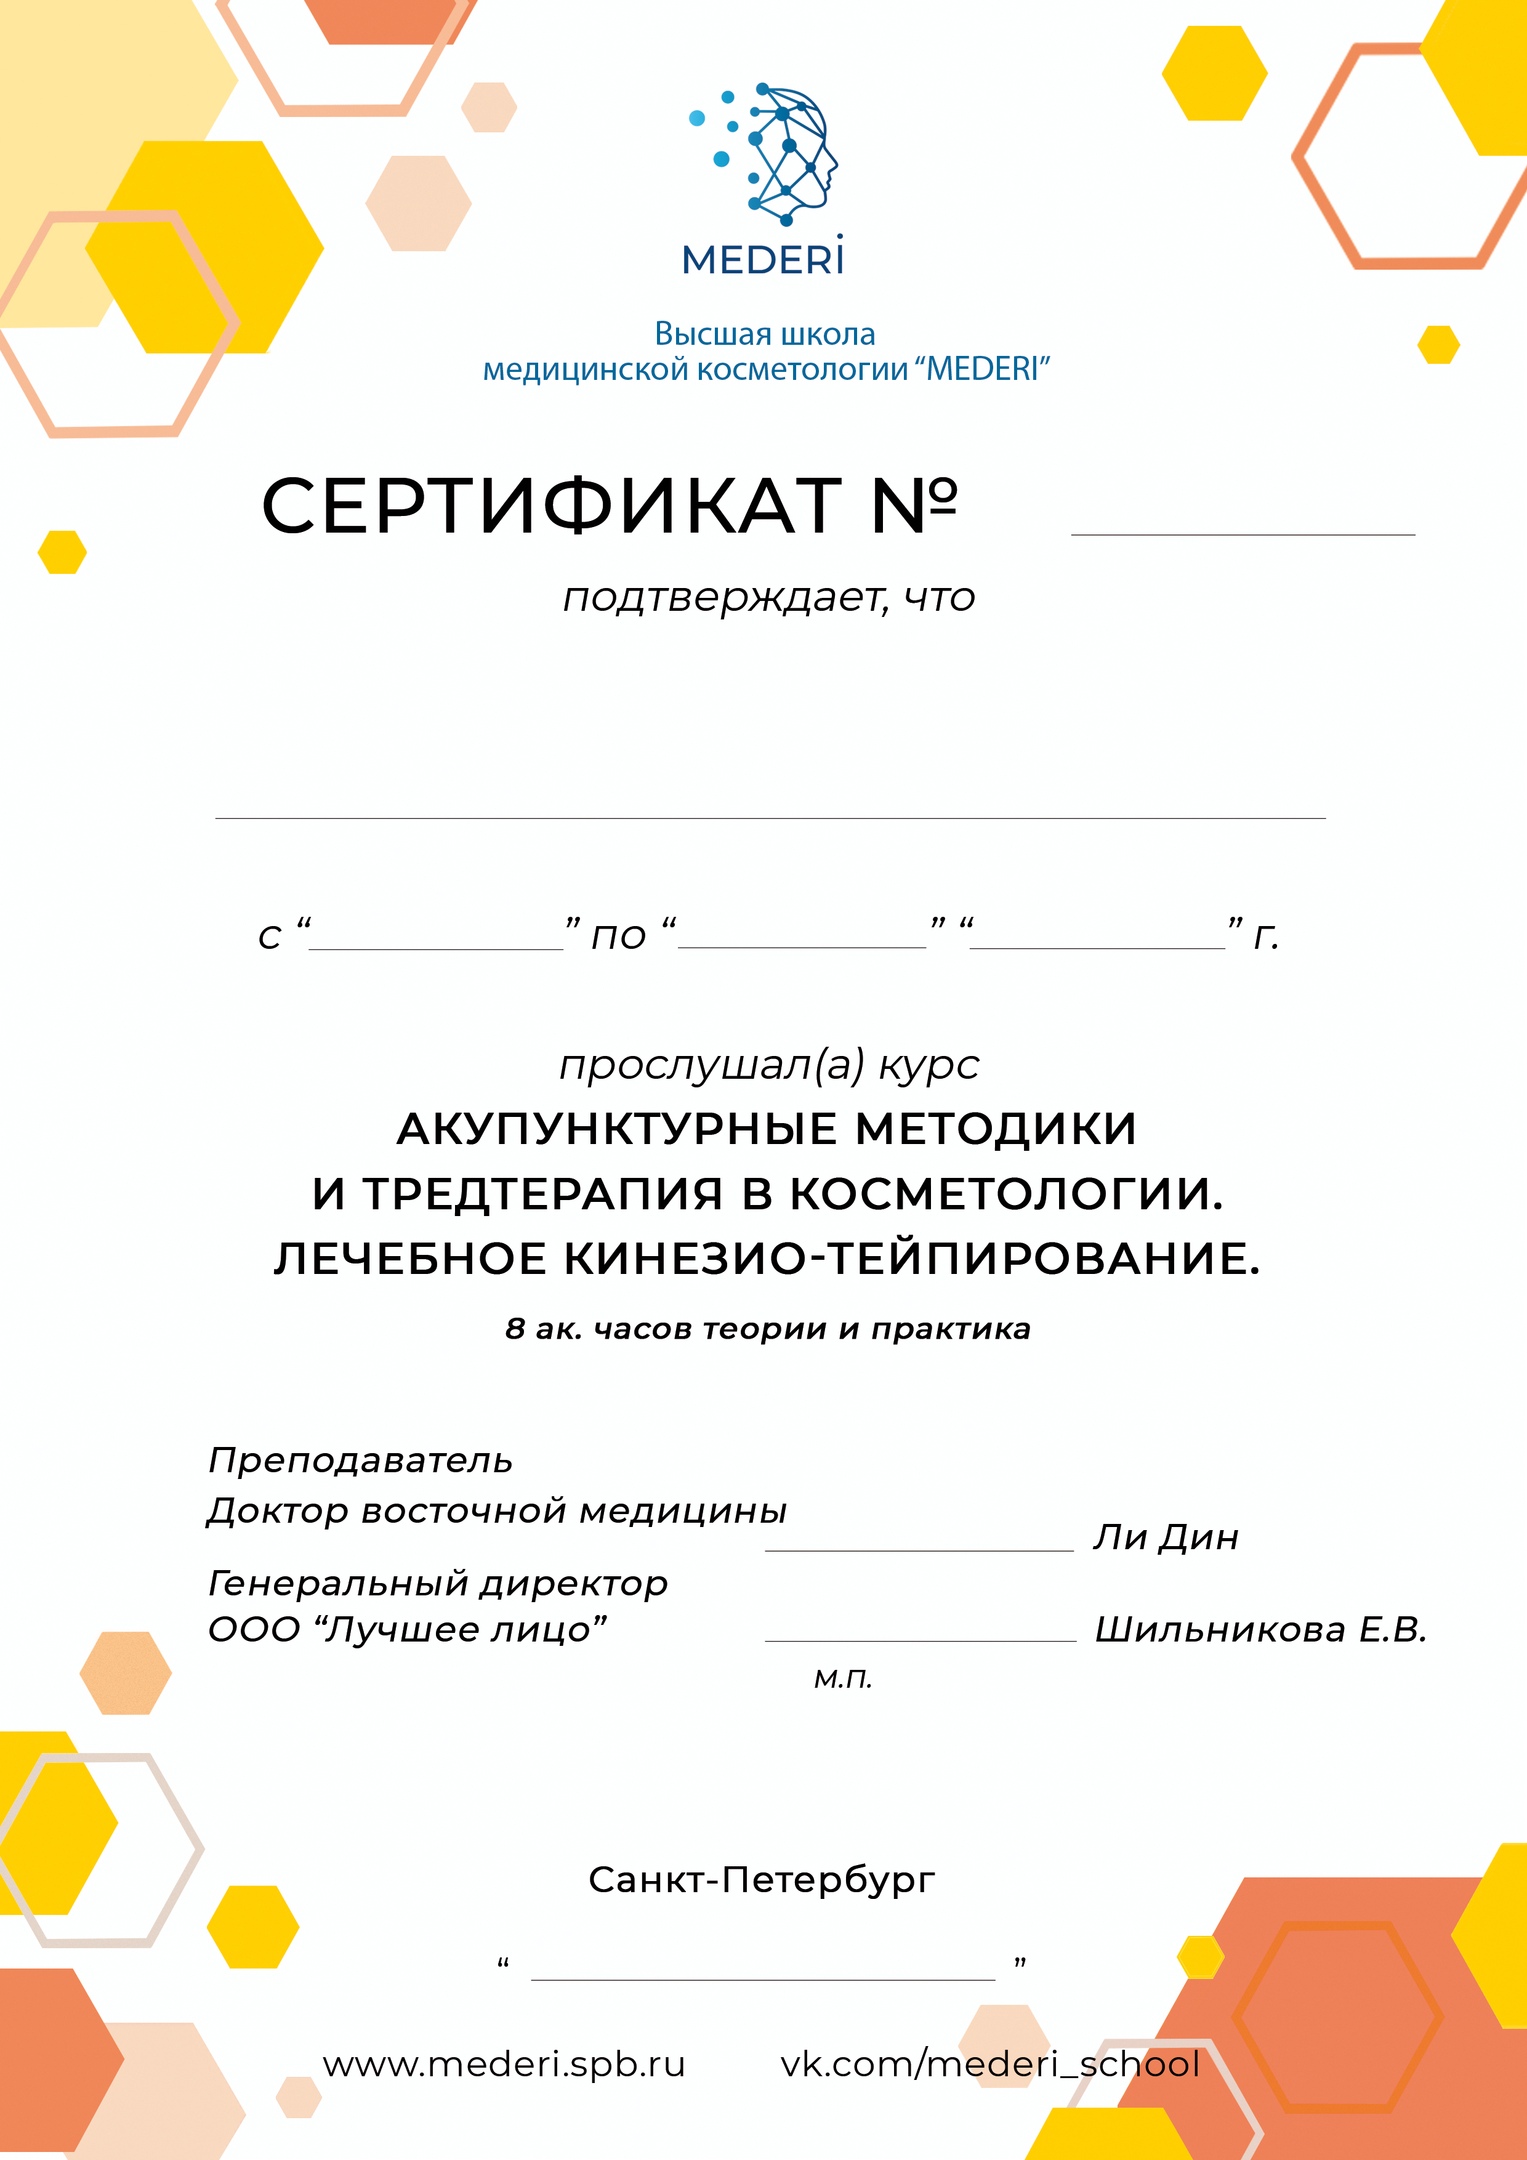 Сертификат по акупунктуре и тредтерапии